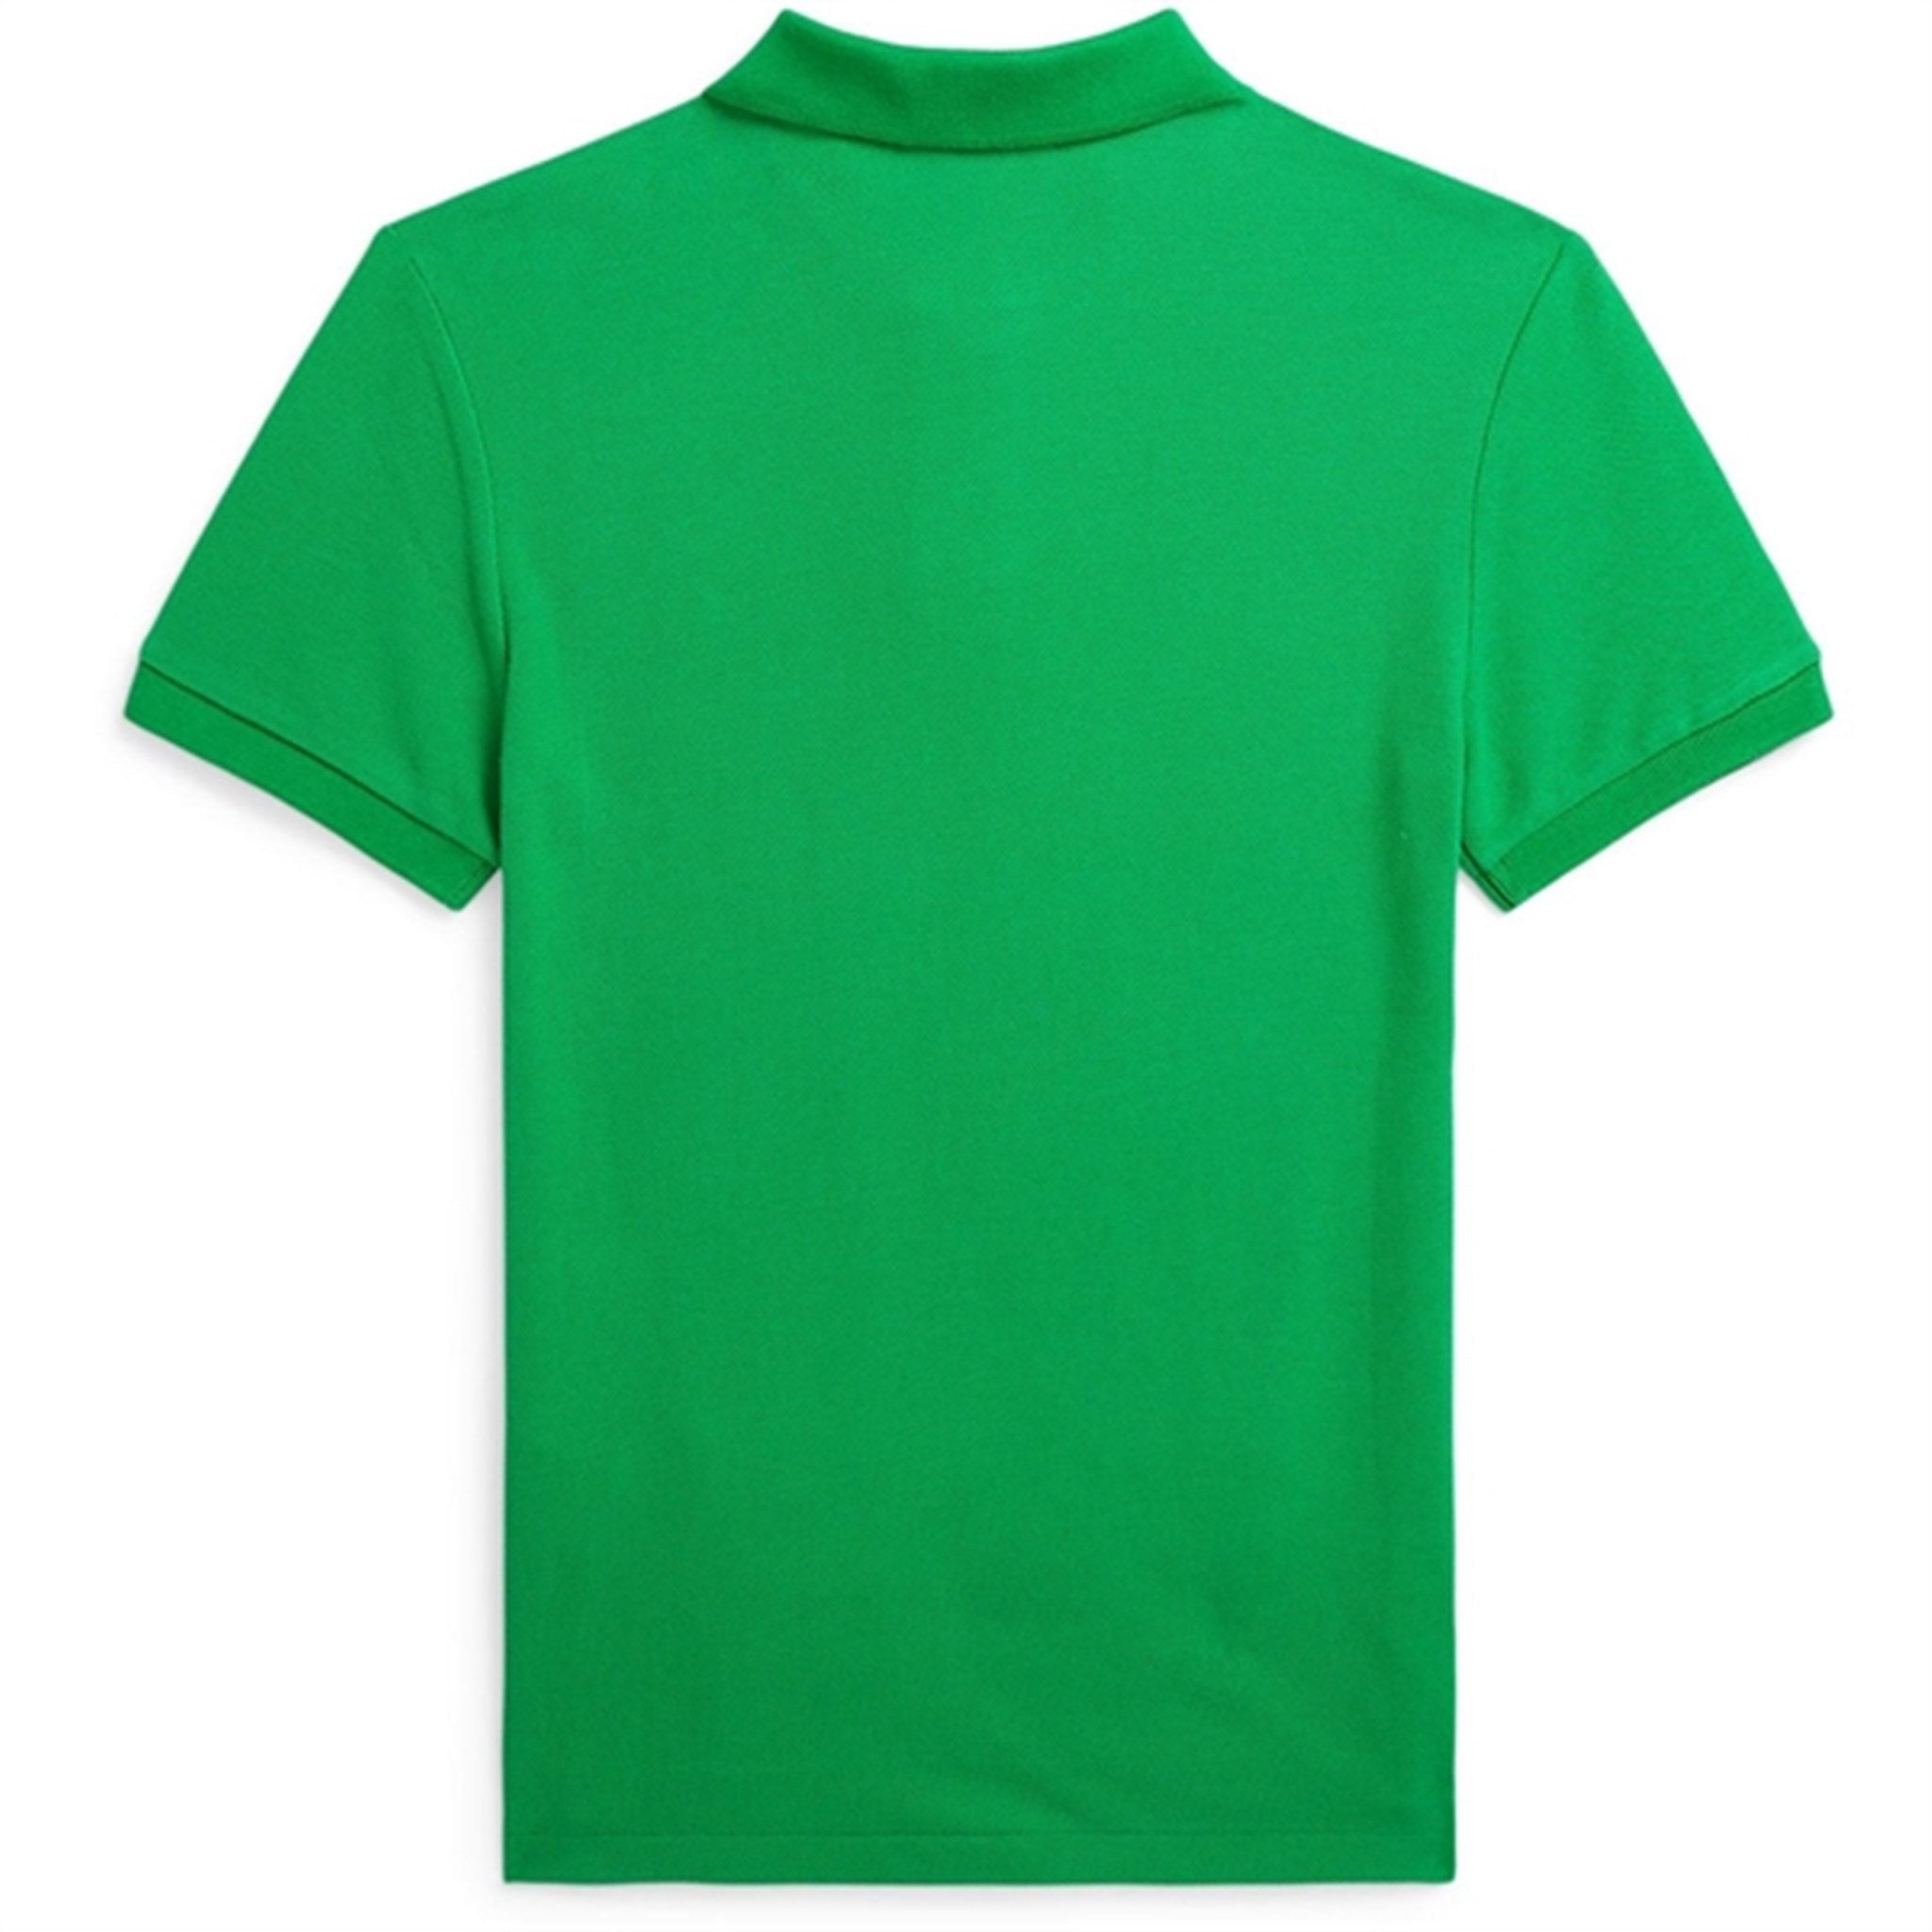 Polo Ralph Lauren Boys Polo Shirt Preppy Green 2